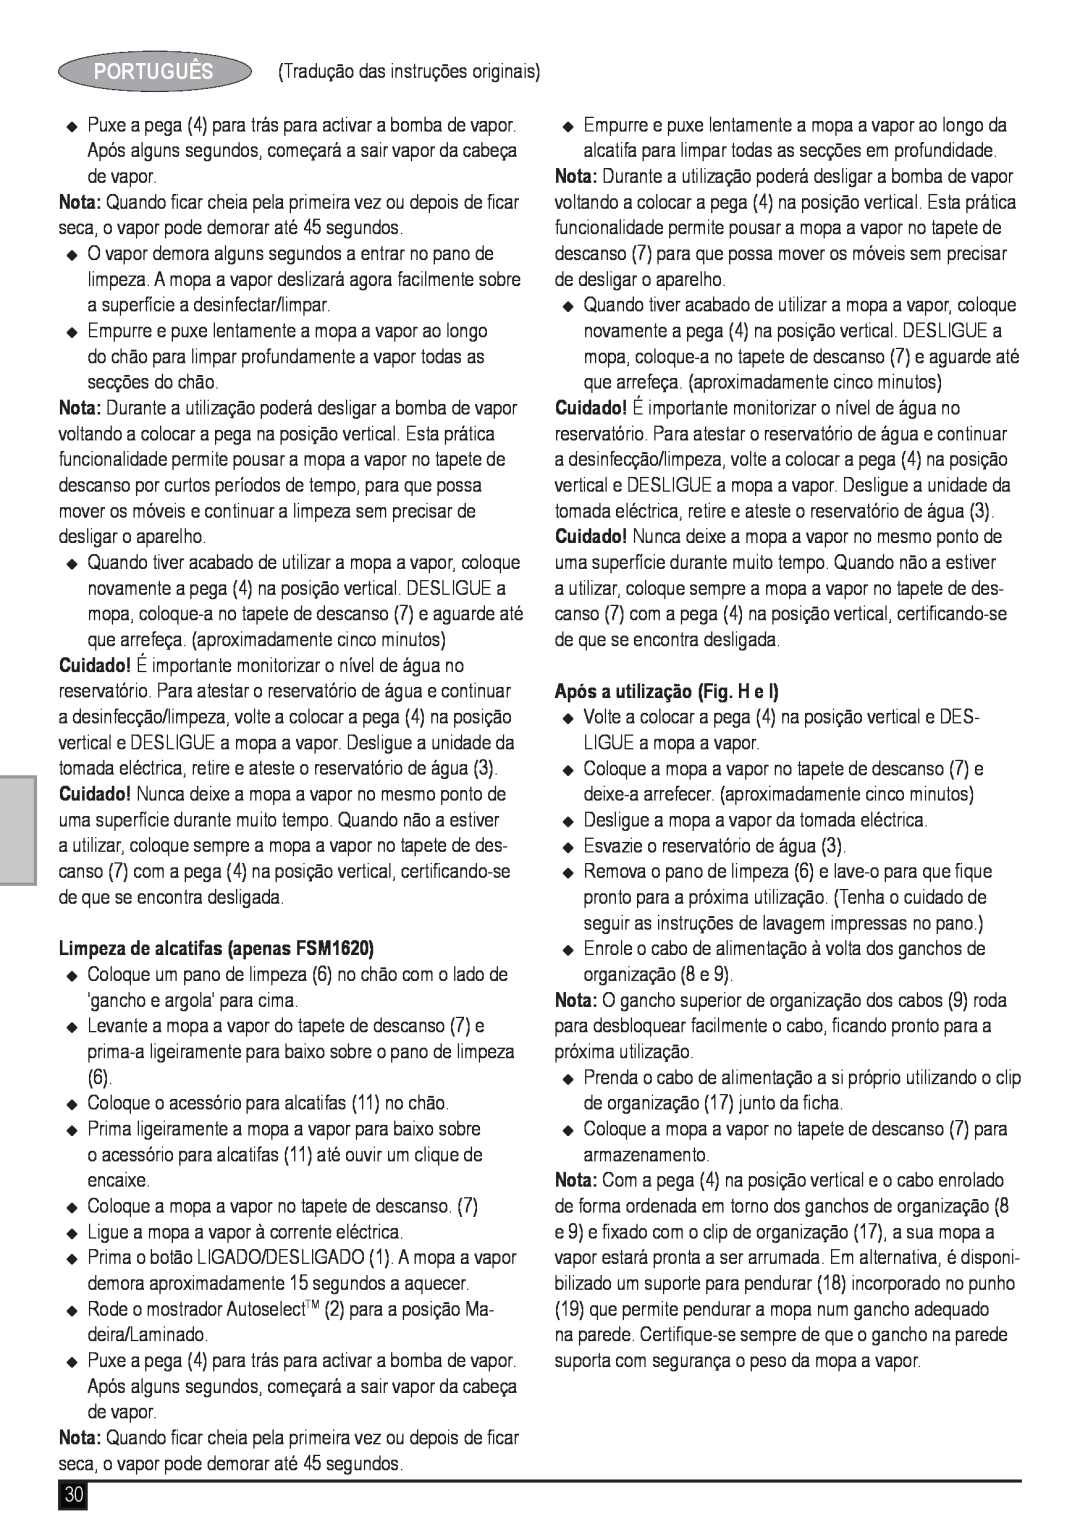 Black & Decker manual Limpeza de alcatifas apenas FSM1620, Após a utilização Fig. H e, Português 